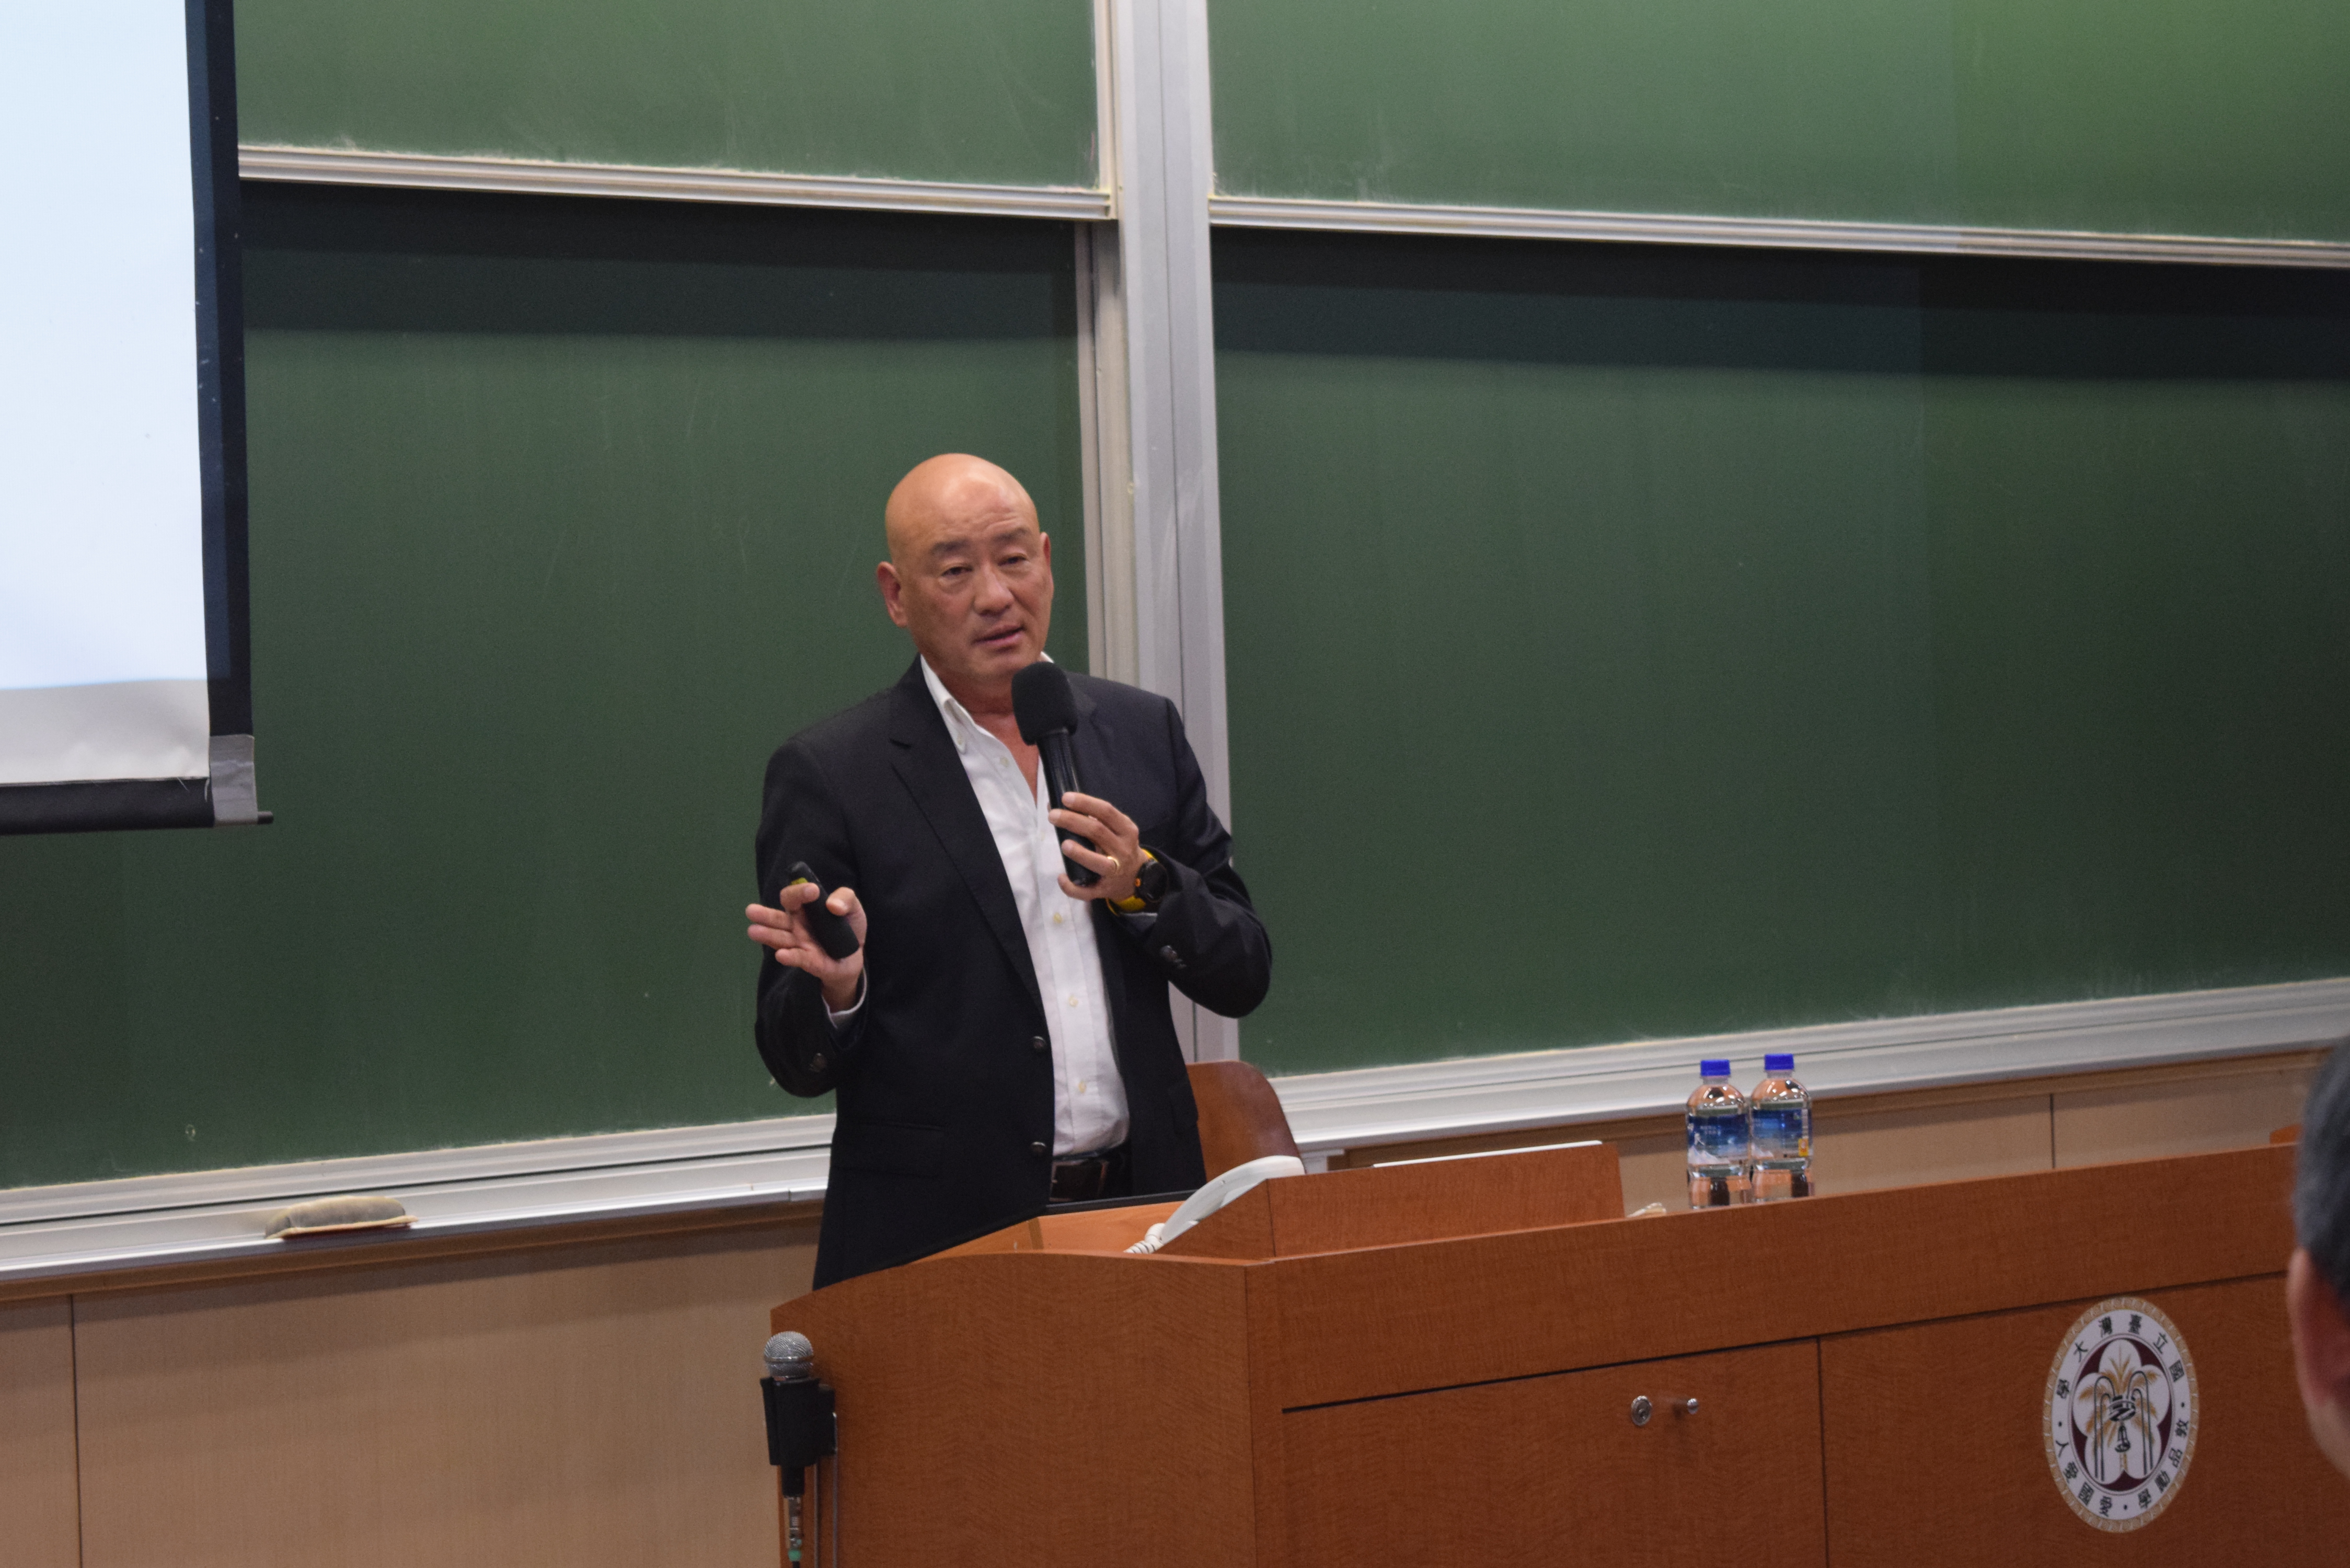  羅祥安執行長發表「捷安特的世界(關鍵決策)」專題演講